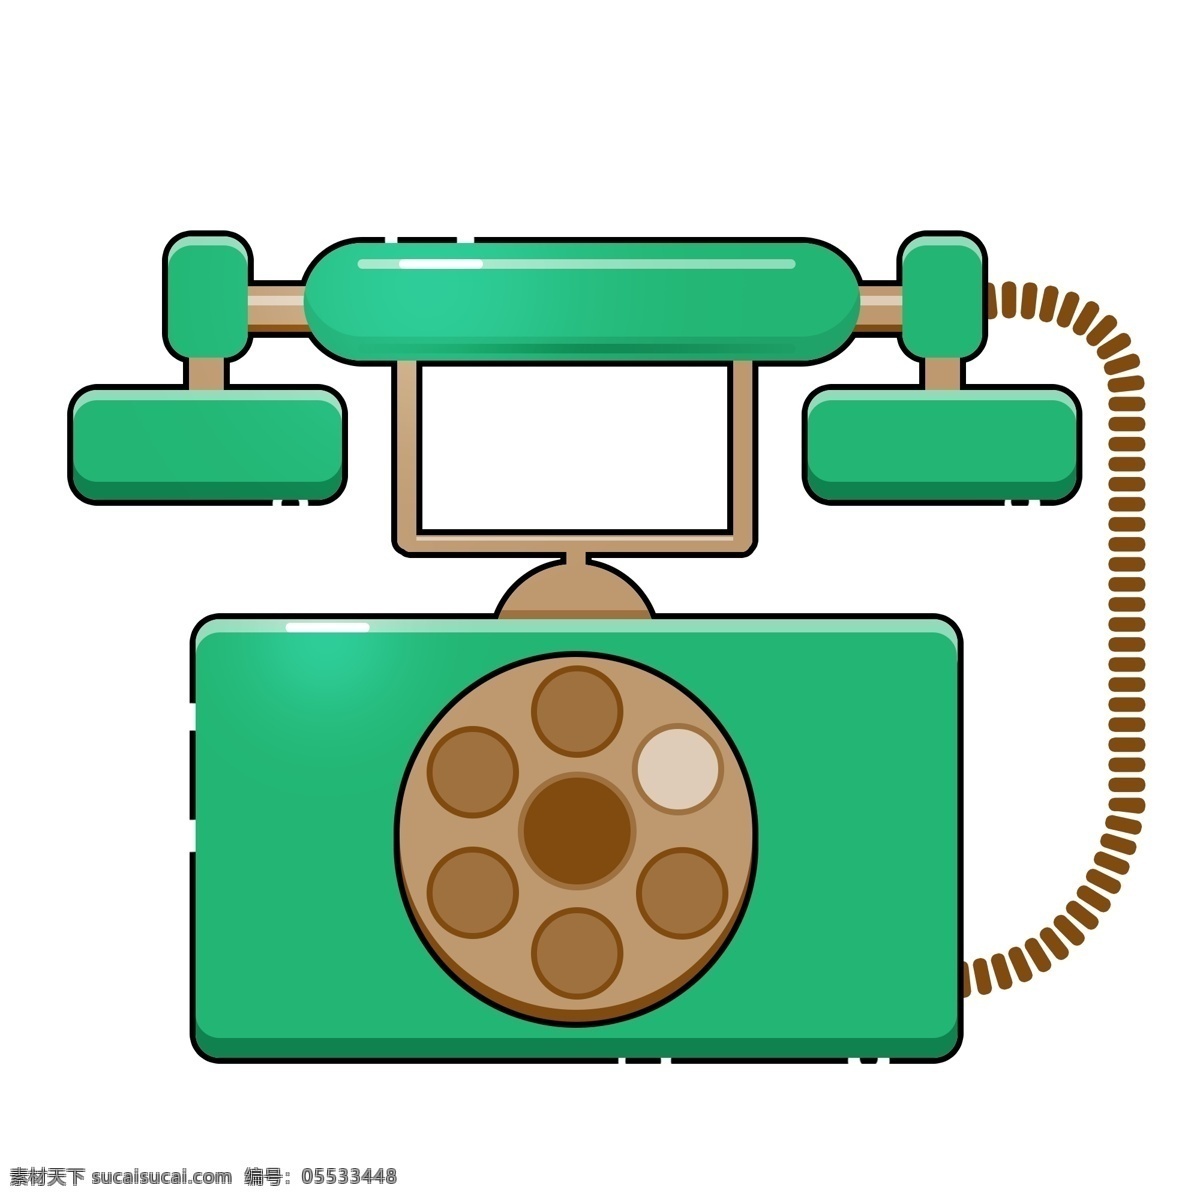 绿色 来电 电话 标志 复古电话 电话图标 复古电话图标 电话机 电话机图标 绿色电话 复古风电话